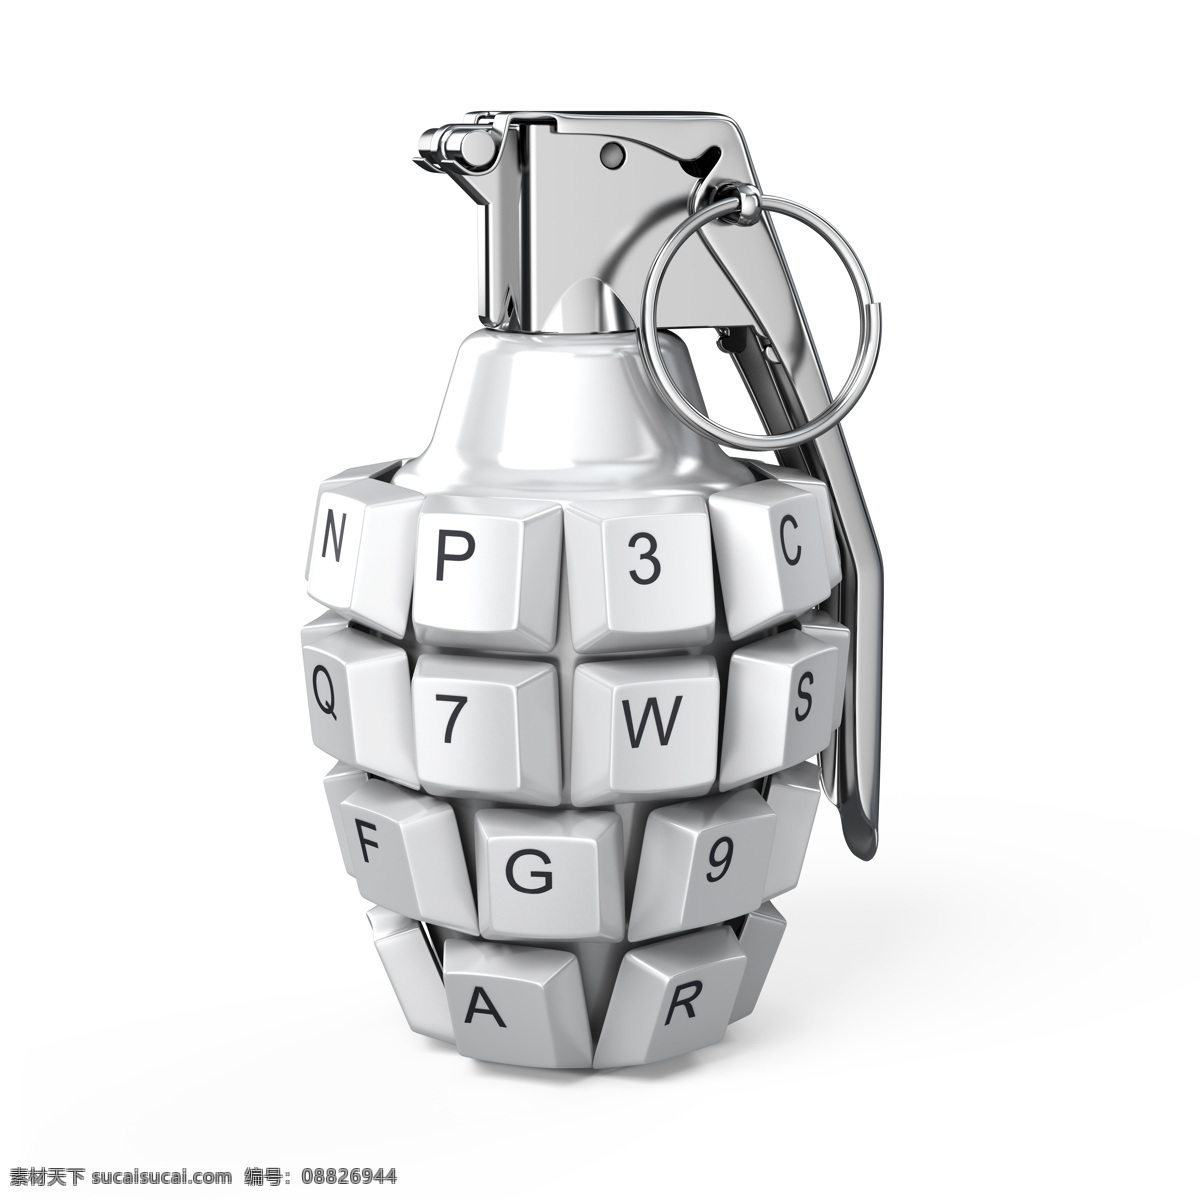 创意 键盘 手雷 手榴弹 键盘按键 军事武器 武器装备 武装 现代科技